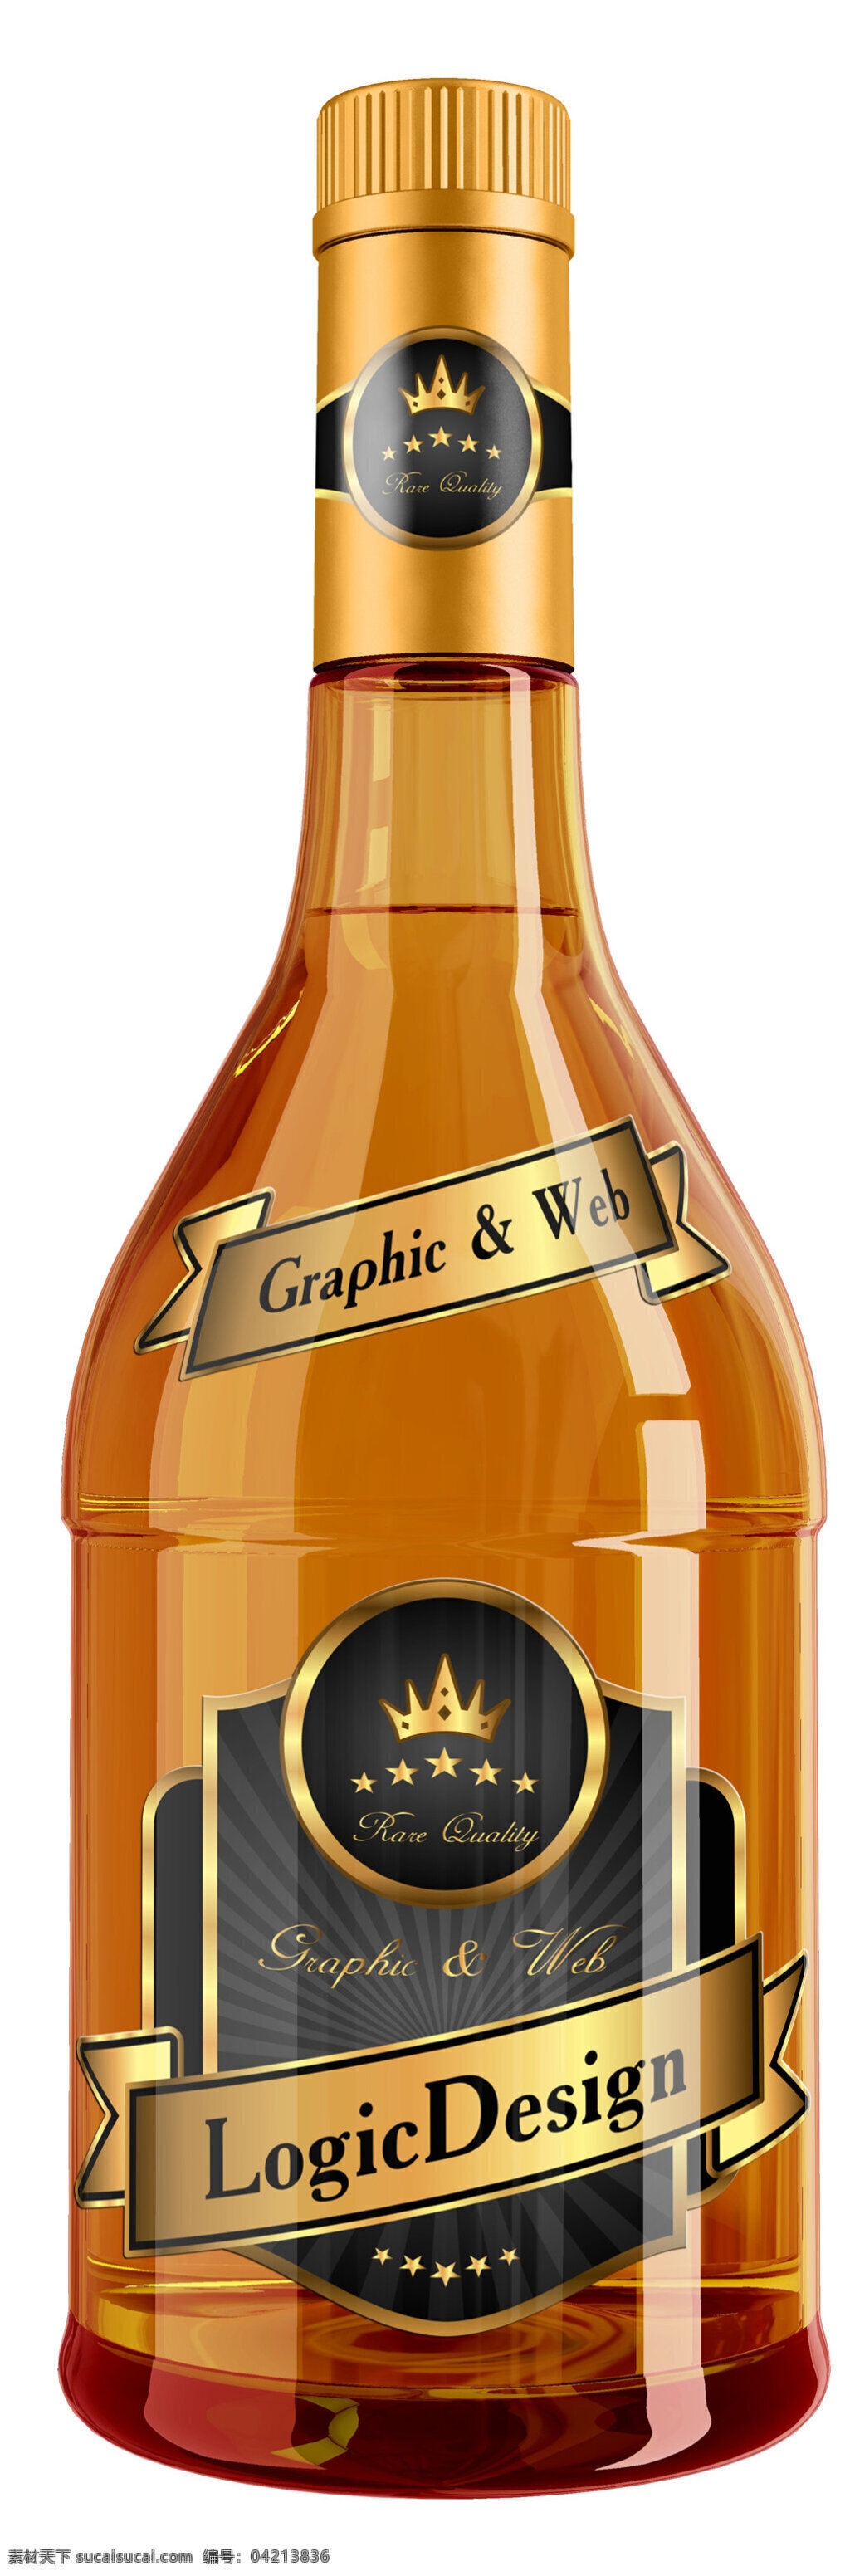 威士忌 瓶子 包装 产品包装 广告 包装广告 包装图 包装设计广告 产品展示图 包装图纸 白色